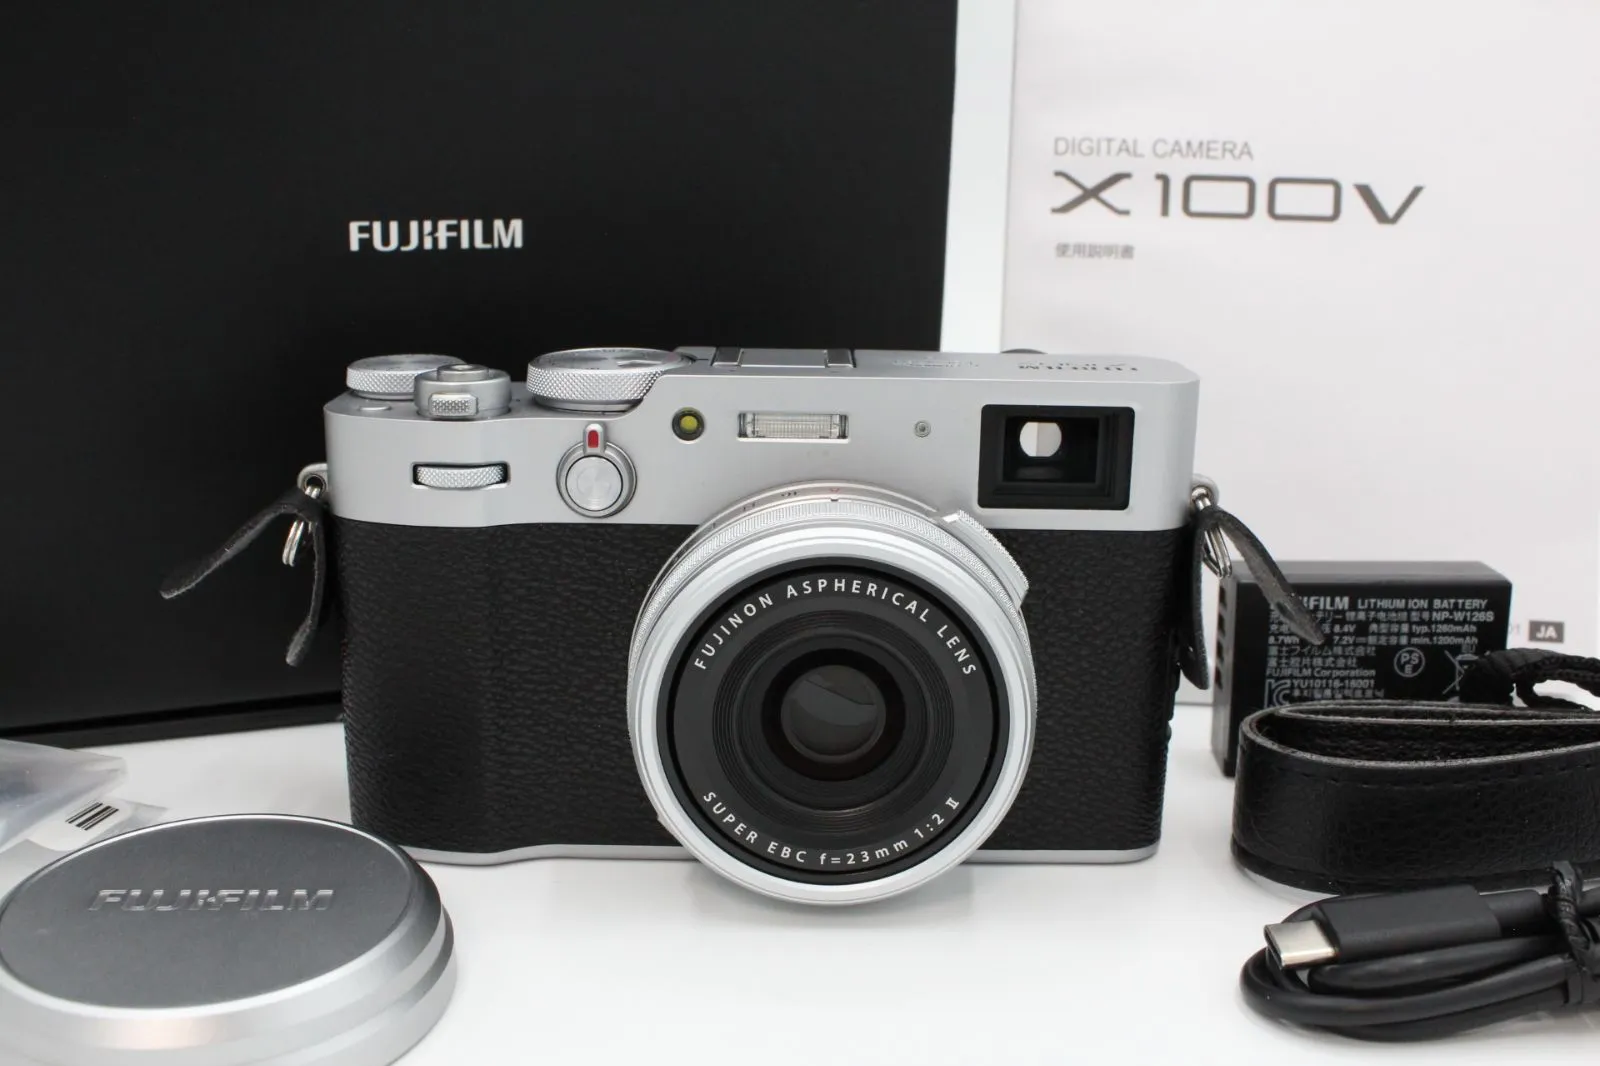 新品 未使用 FUJIFILM 富士フイルム X100V S シルバーコンパクトデジタルカメラ